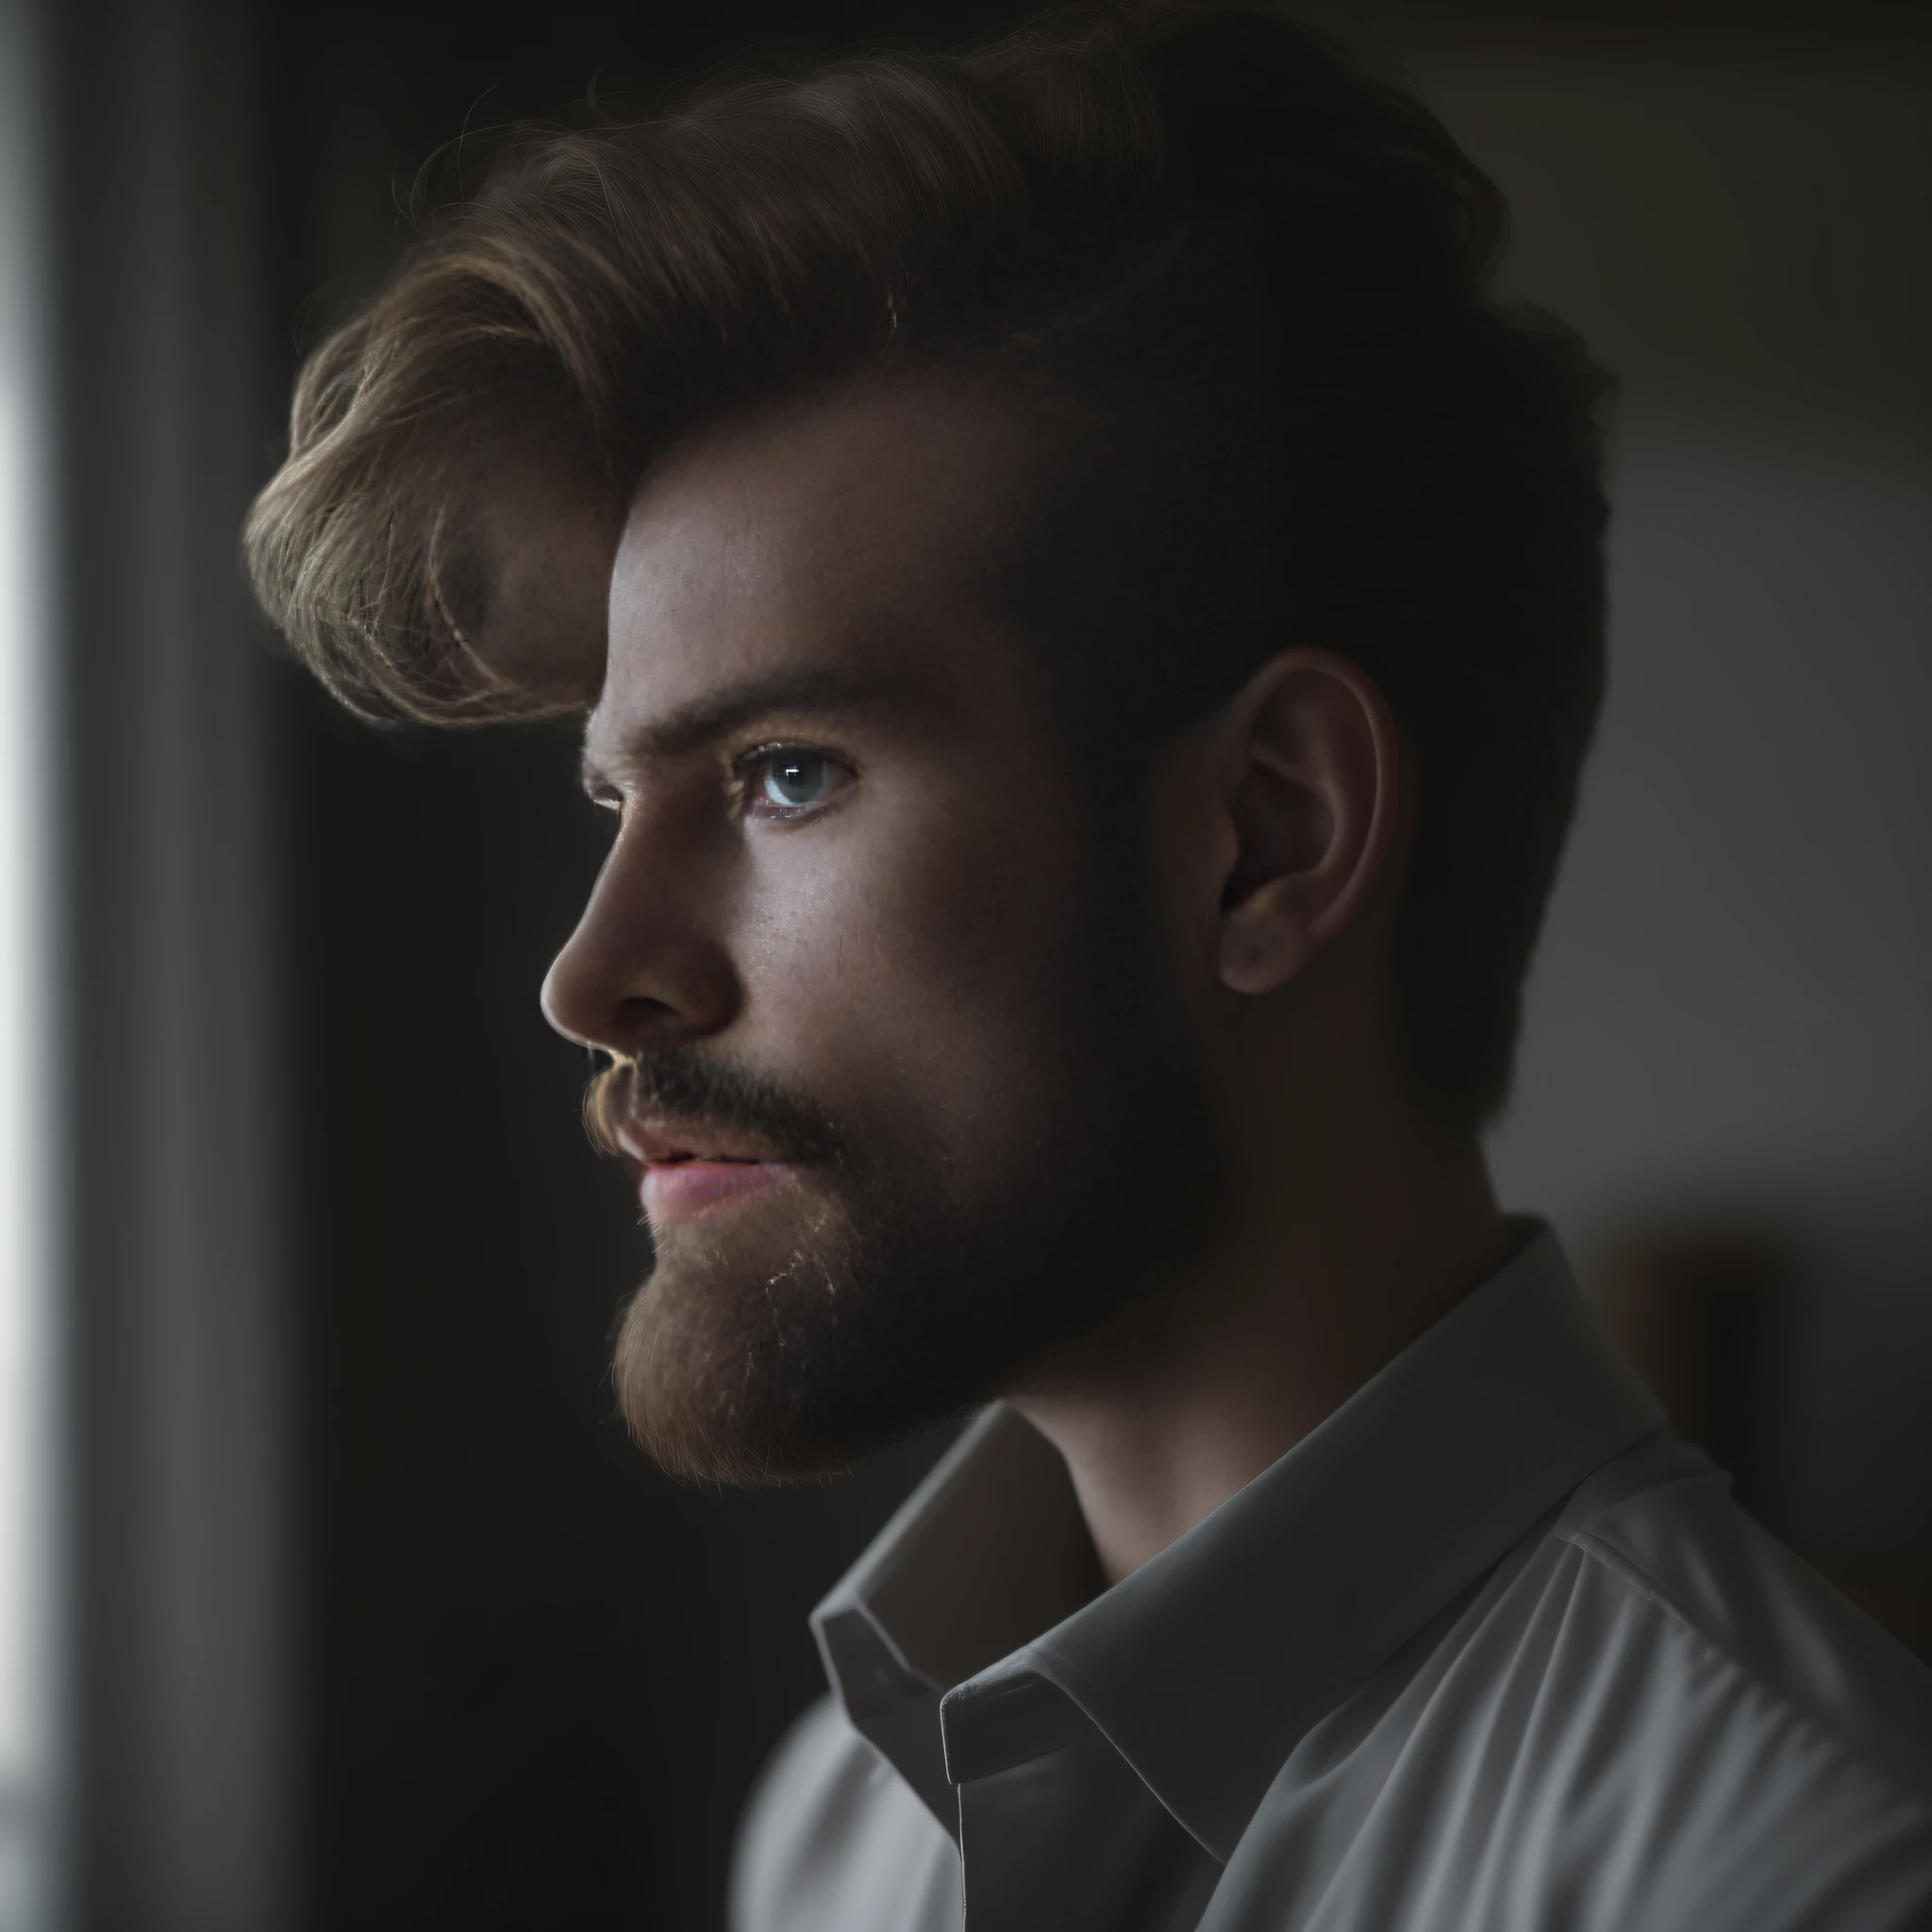 23-летний мужчина из Дании, мужской род, бородатый, ключевая борода, модель, все тело, элегантная поза, очень красивый, глядя в камеру, детальное изображение, UHD, 8К, хорошо освещенный, зерно пленки, идеальное освещение